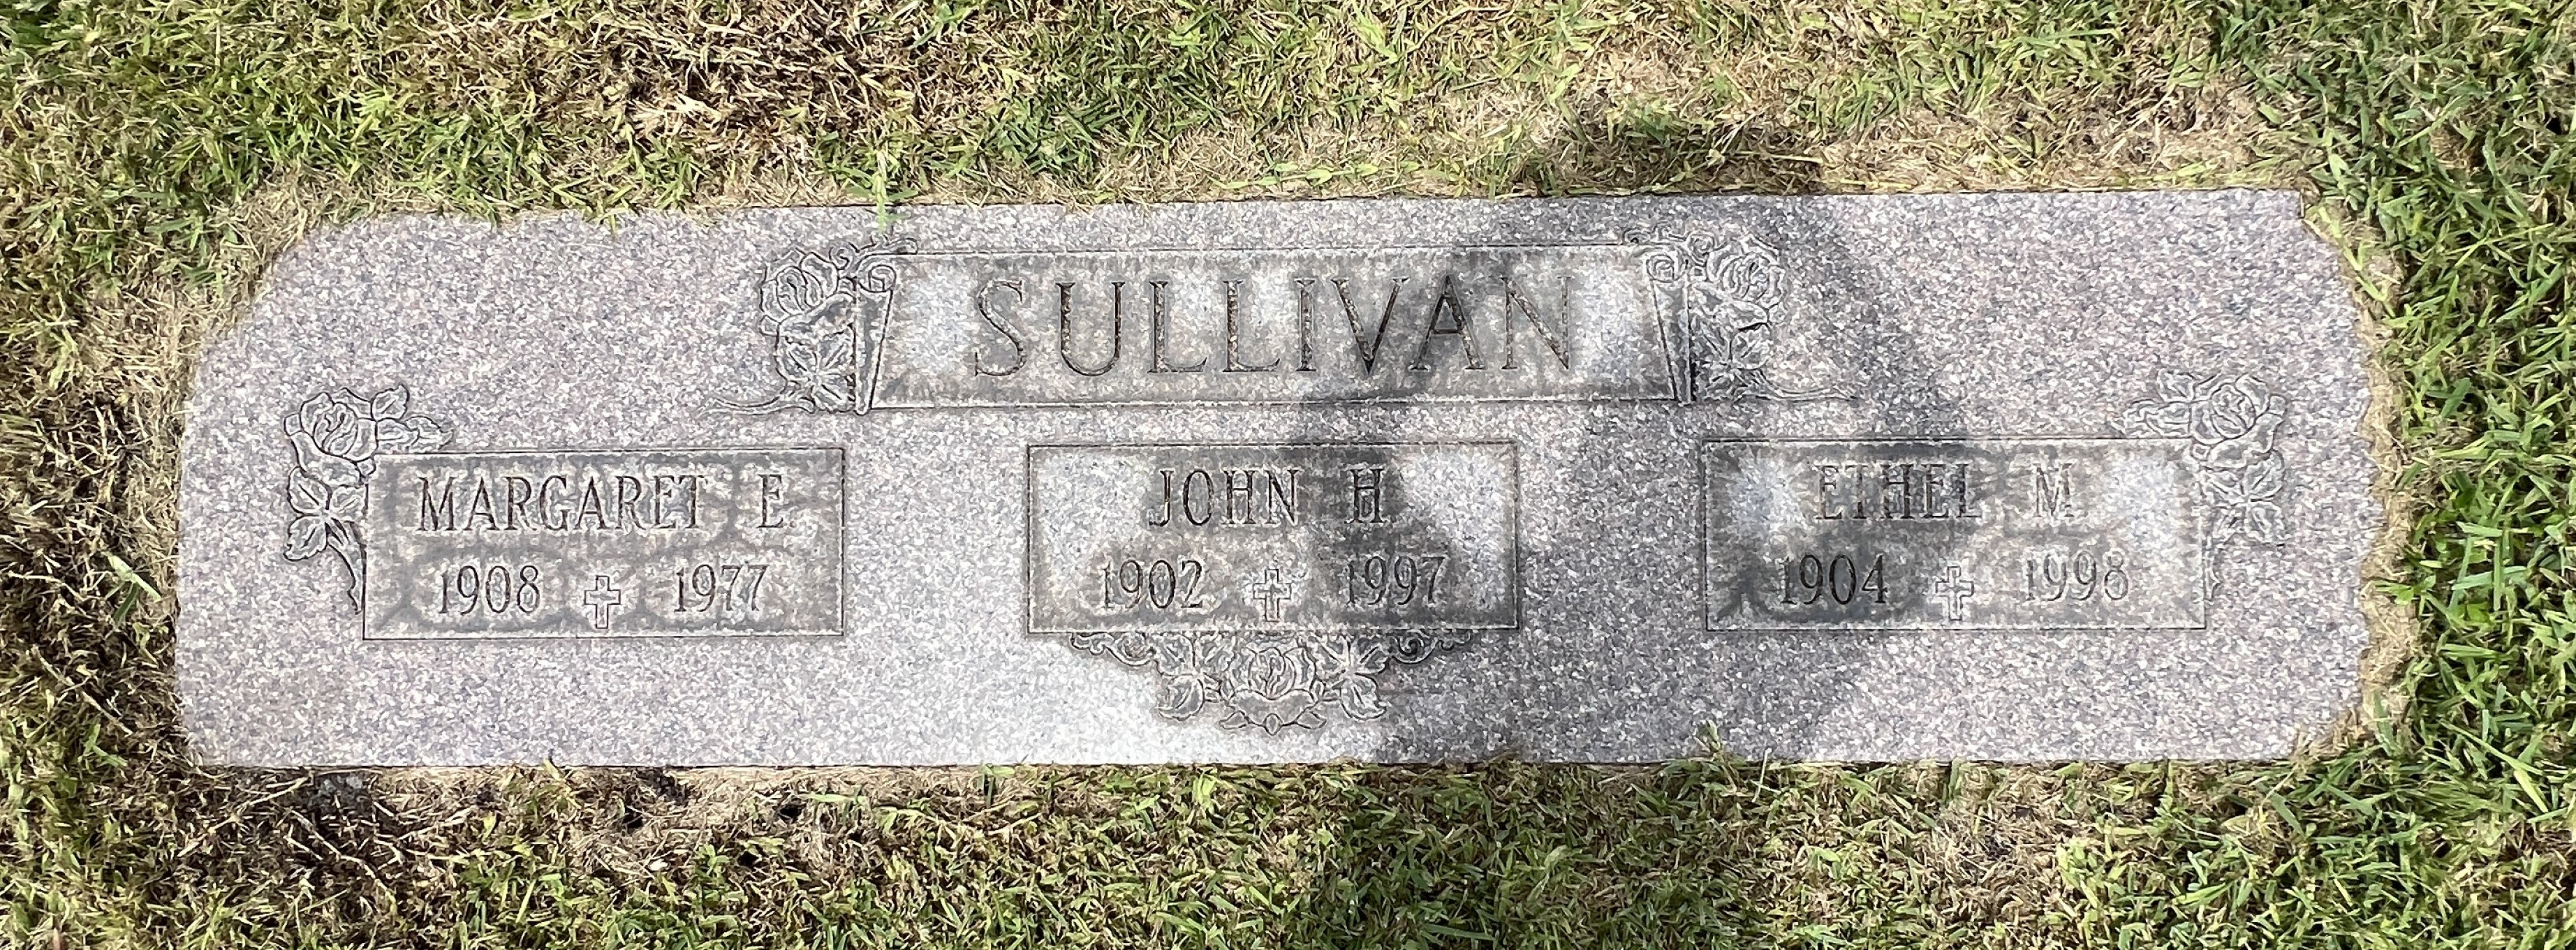 Ethel M Sullivan